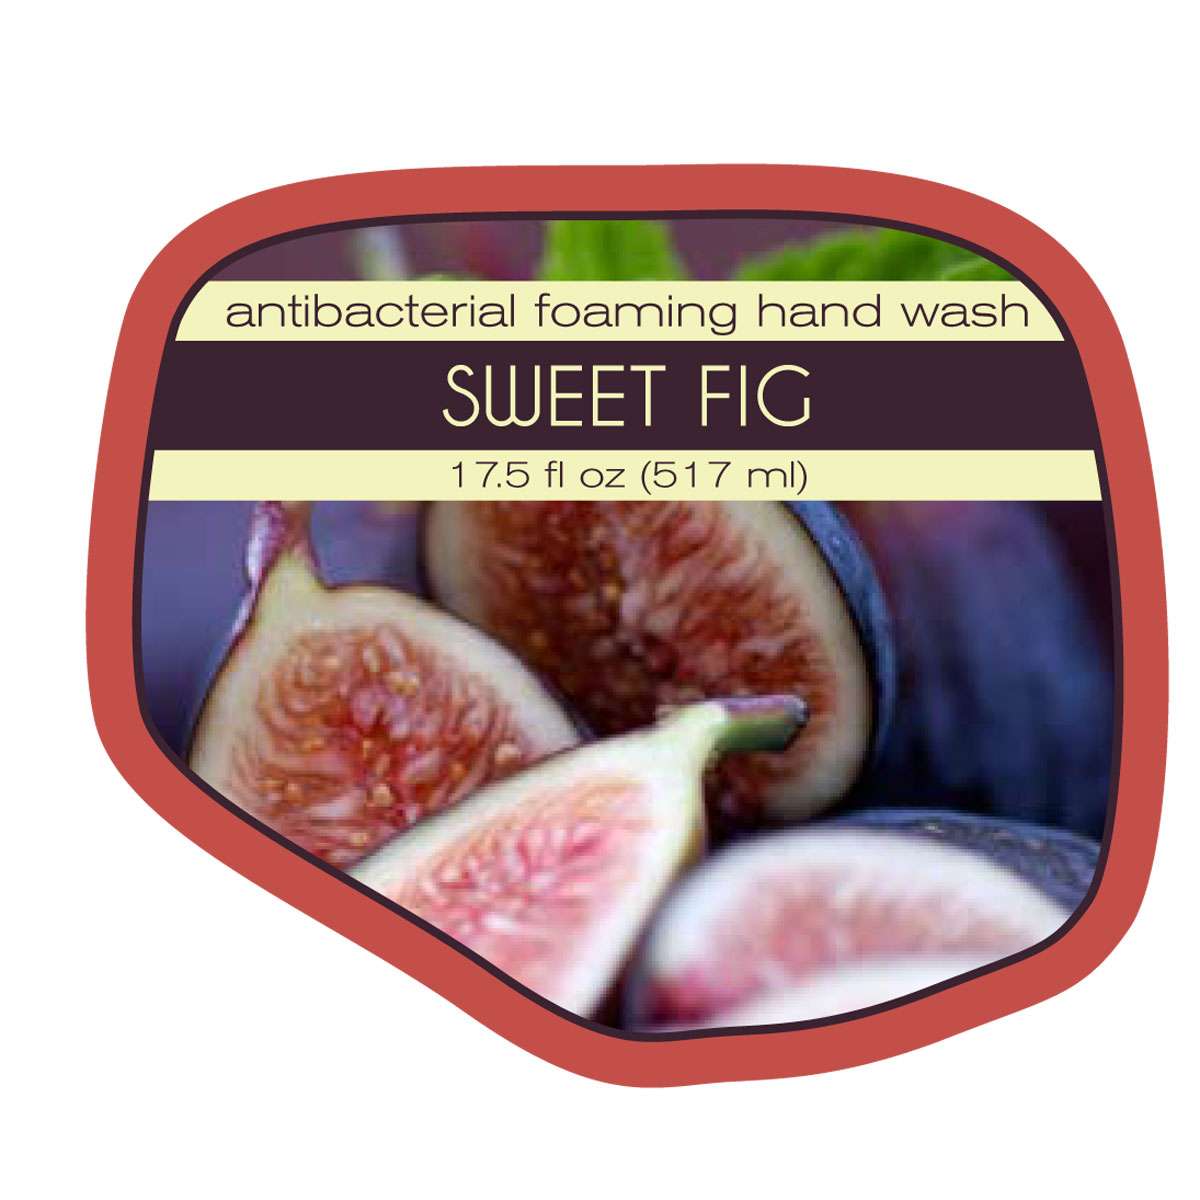 Sweet Fig Antibacterial Foaming Hand Wash